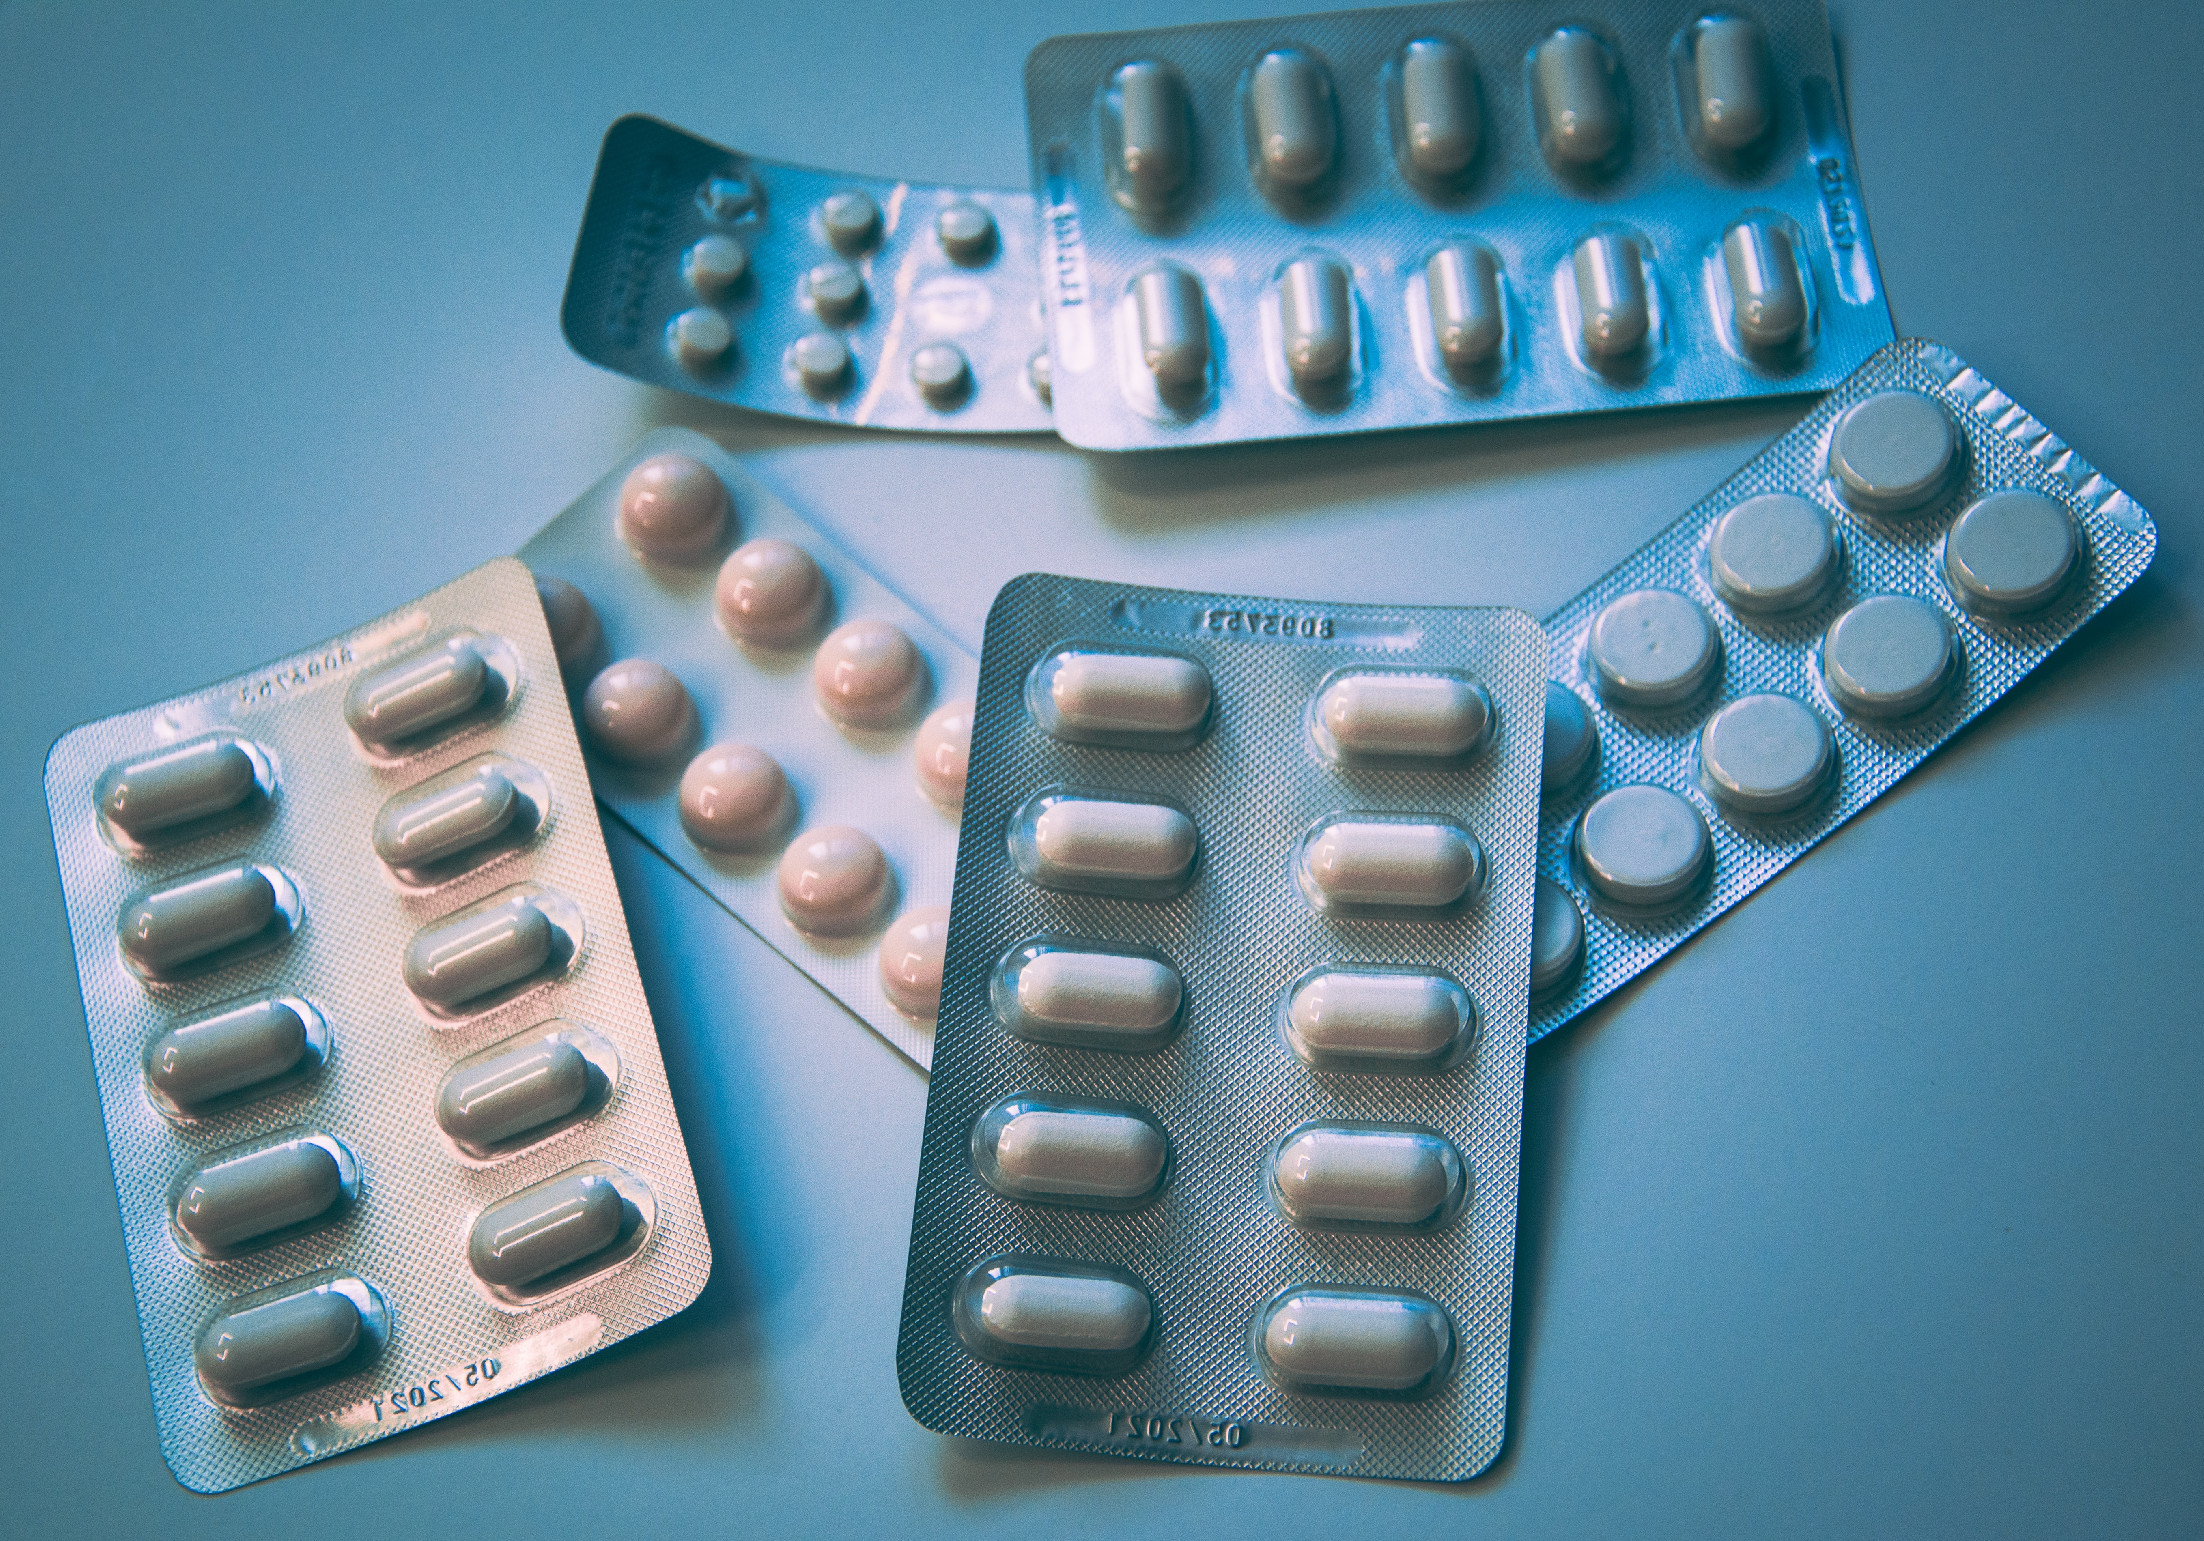 Sokan életmentőnek tartják, sokan pedig mumusnak: az antibiotikum fogyasztása egyre nő 